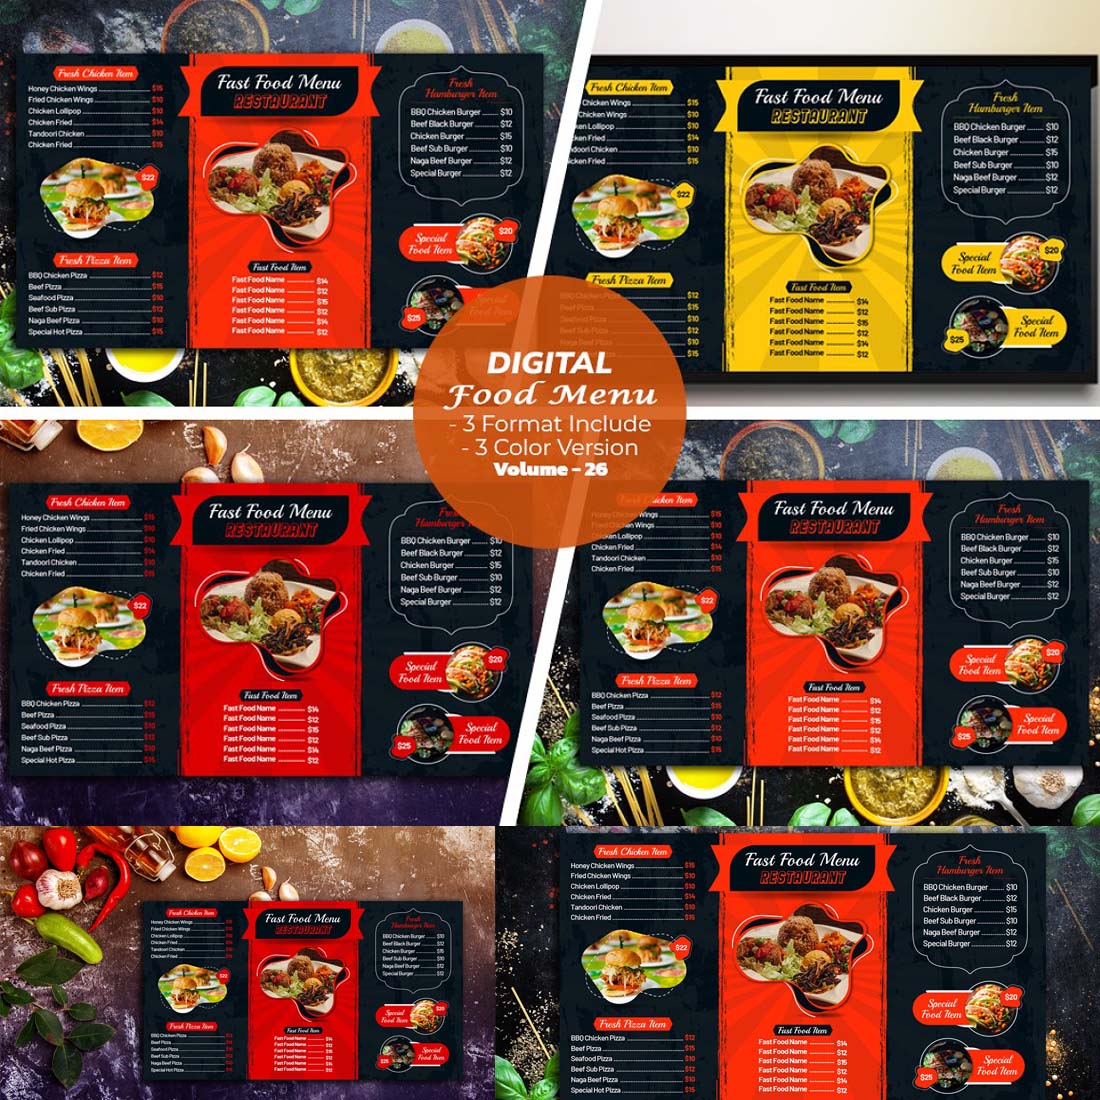 Digital Food Menu Design Template V-26 cover image.